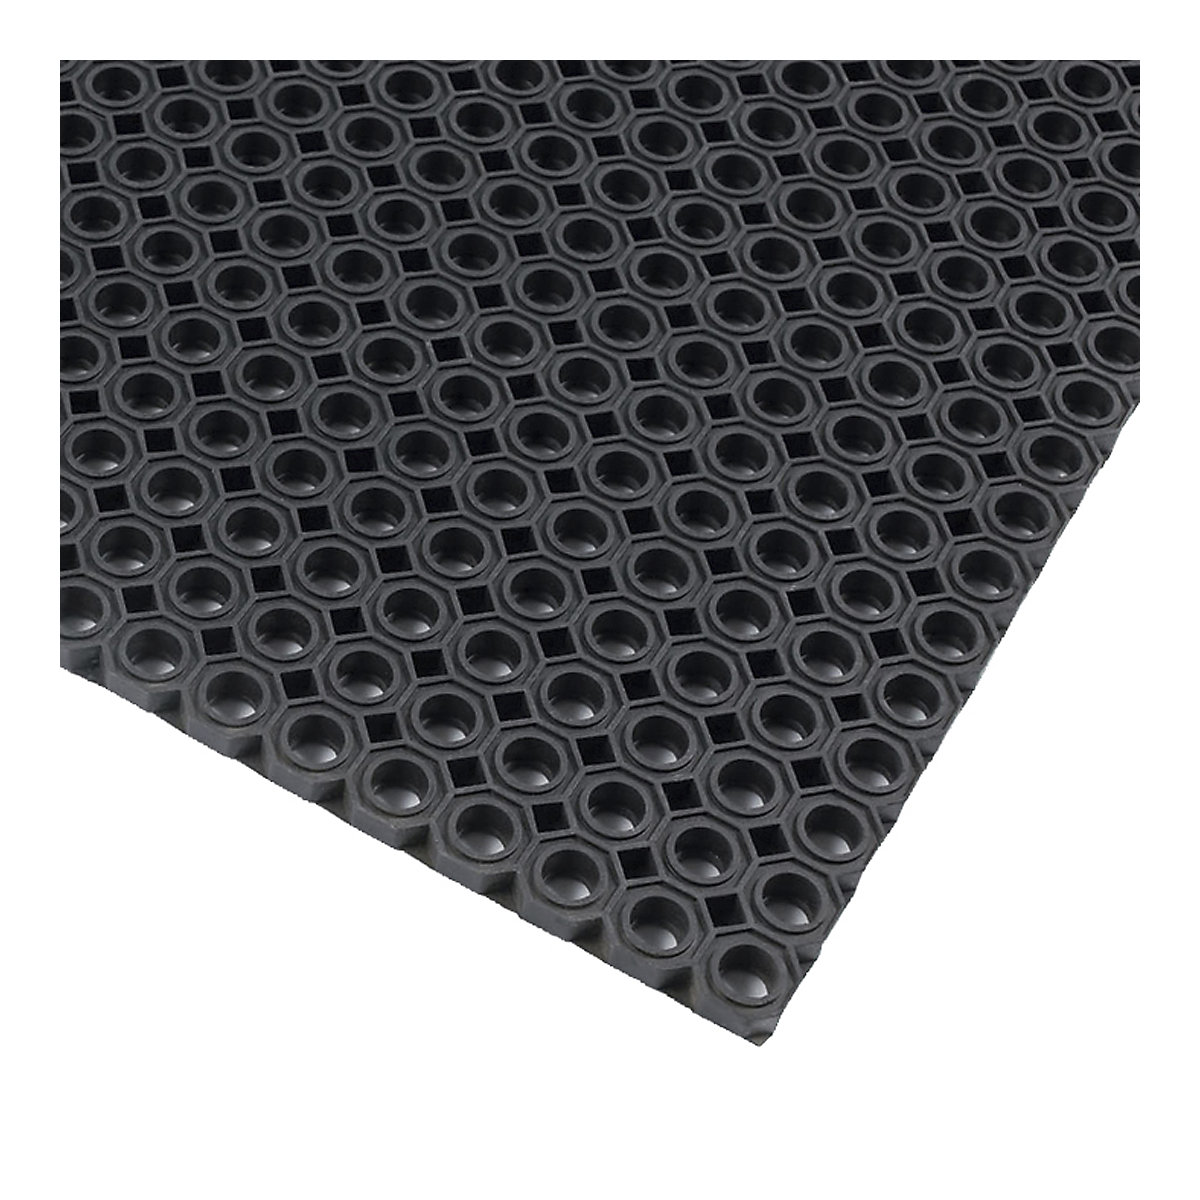 Vuilvangmat, geperforeerd – NOTRAX, zwart, l x b = 1500 x 1000 mm-4